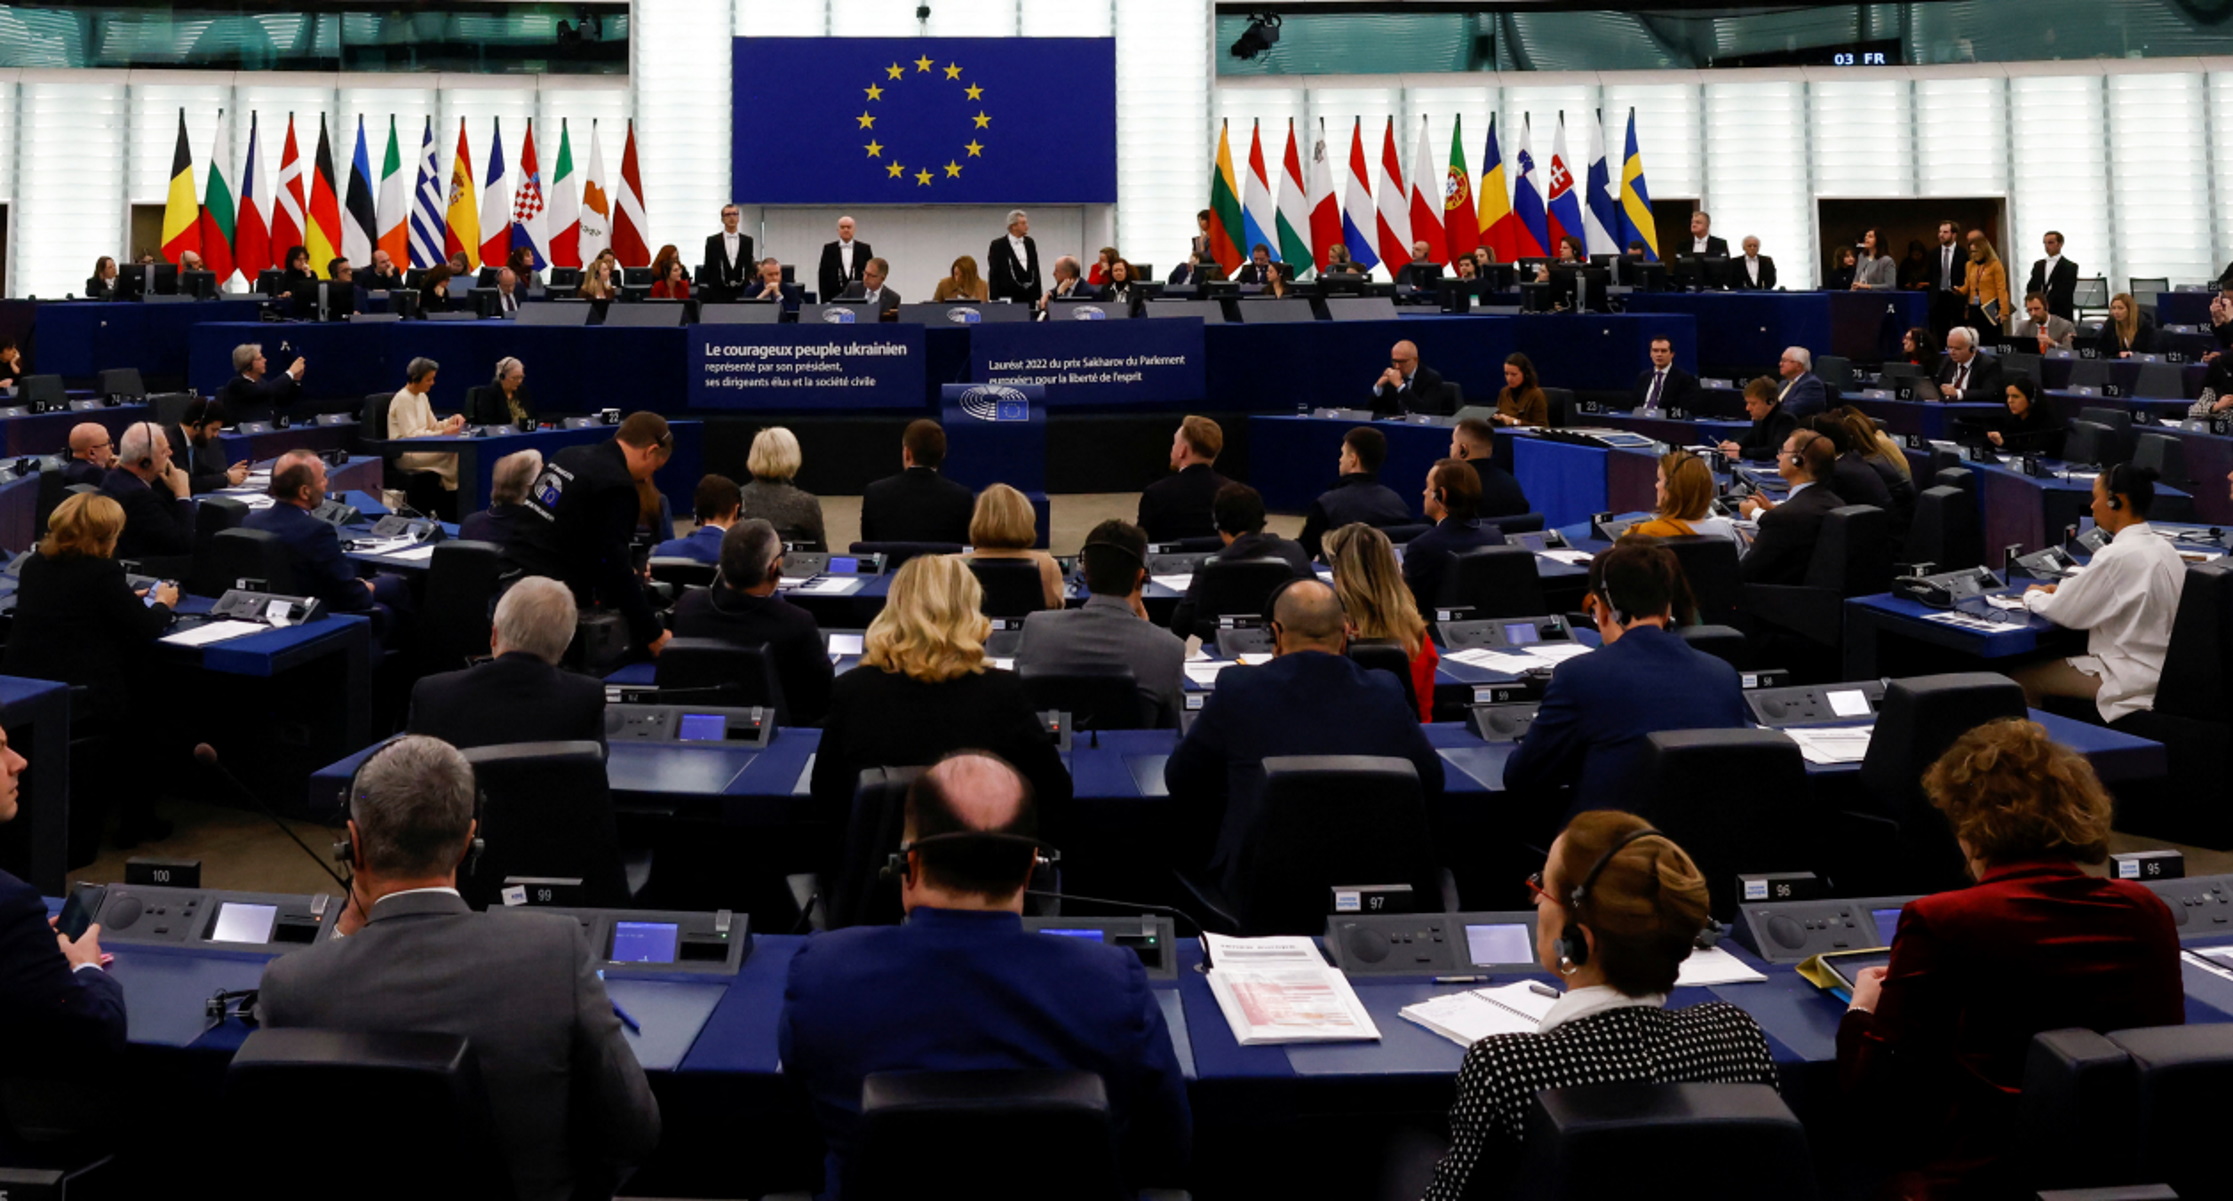 Ευρωπαϊκό Κοινοβούλιο: «Πόρτα» στους αντιπροσώπους του Κατάρ όσο διαρκούν οι δικαστικές έρευνες